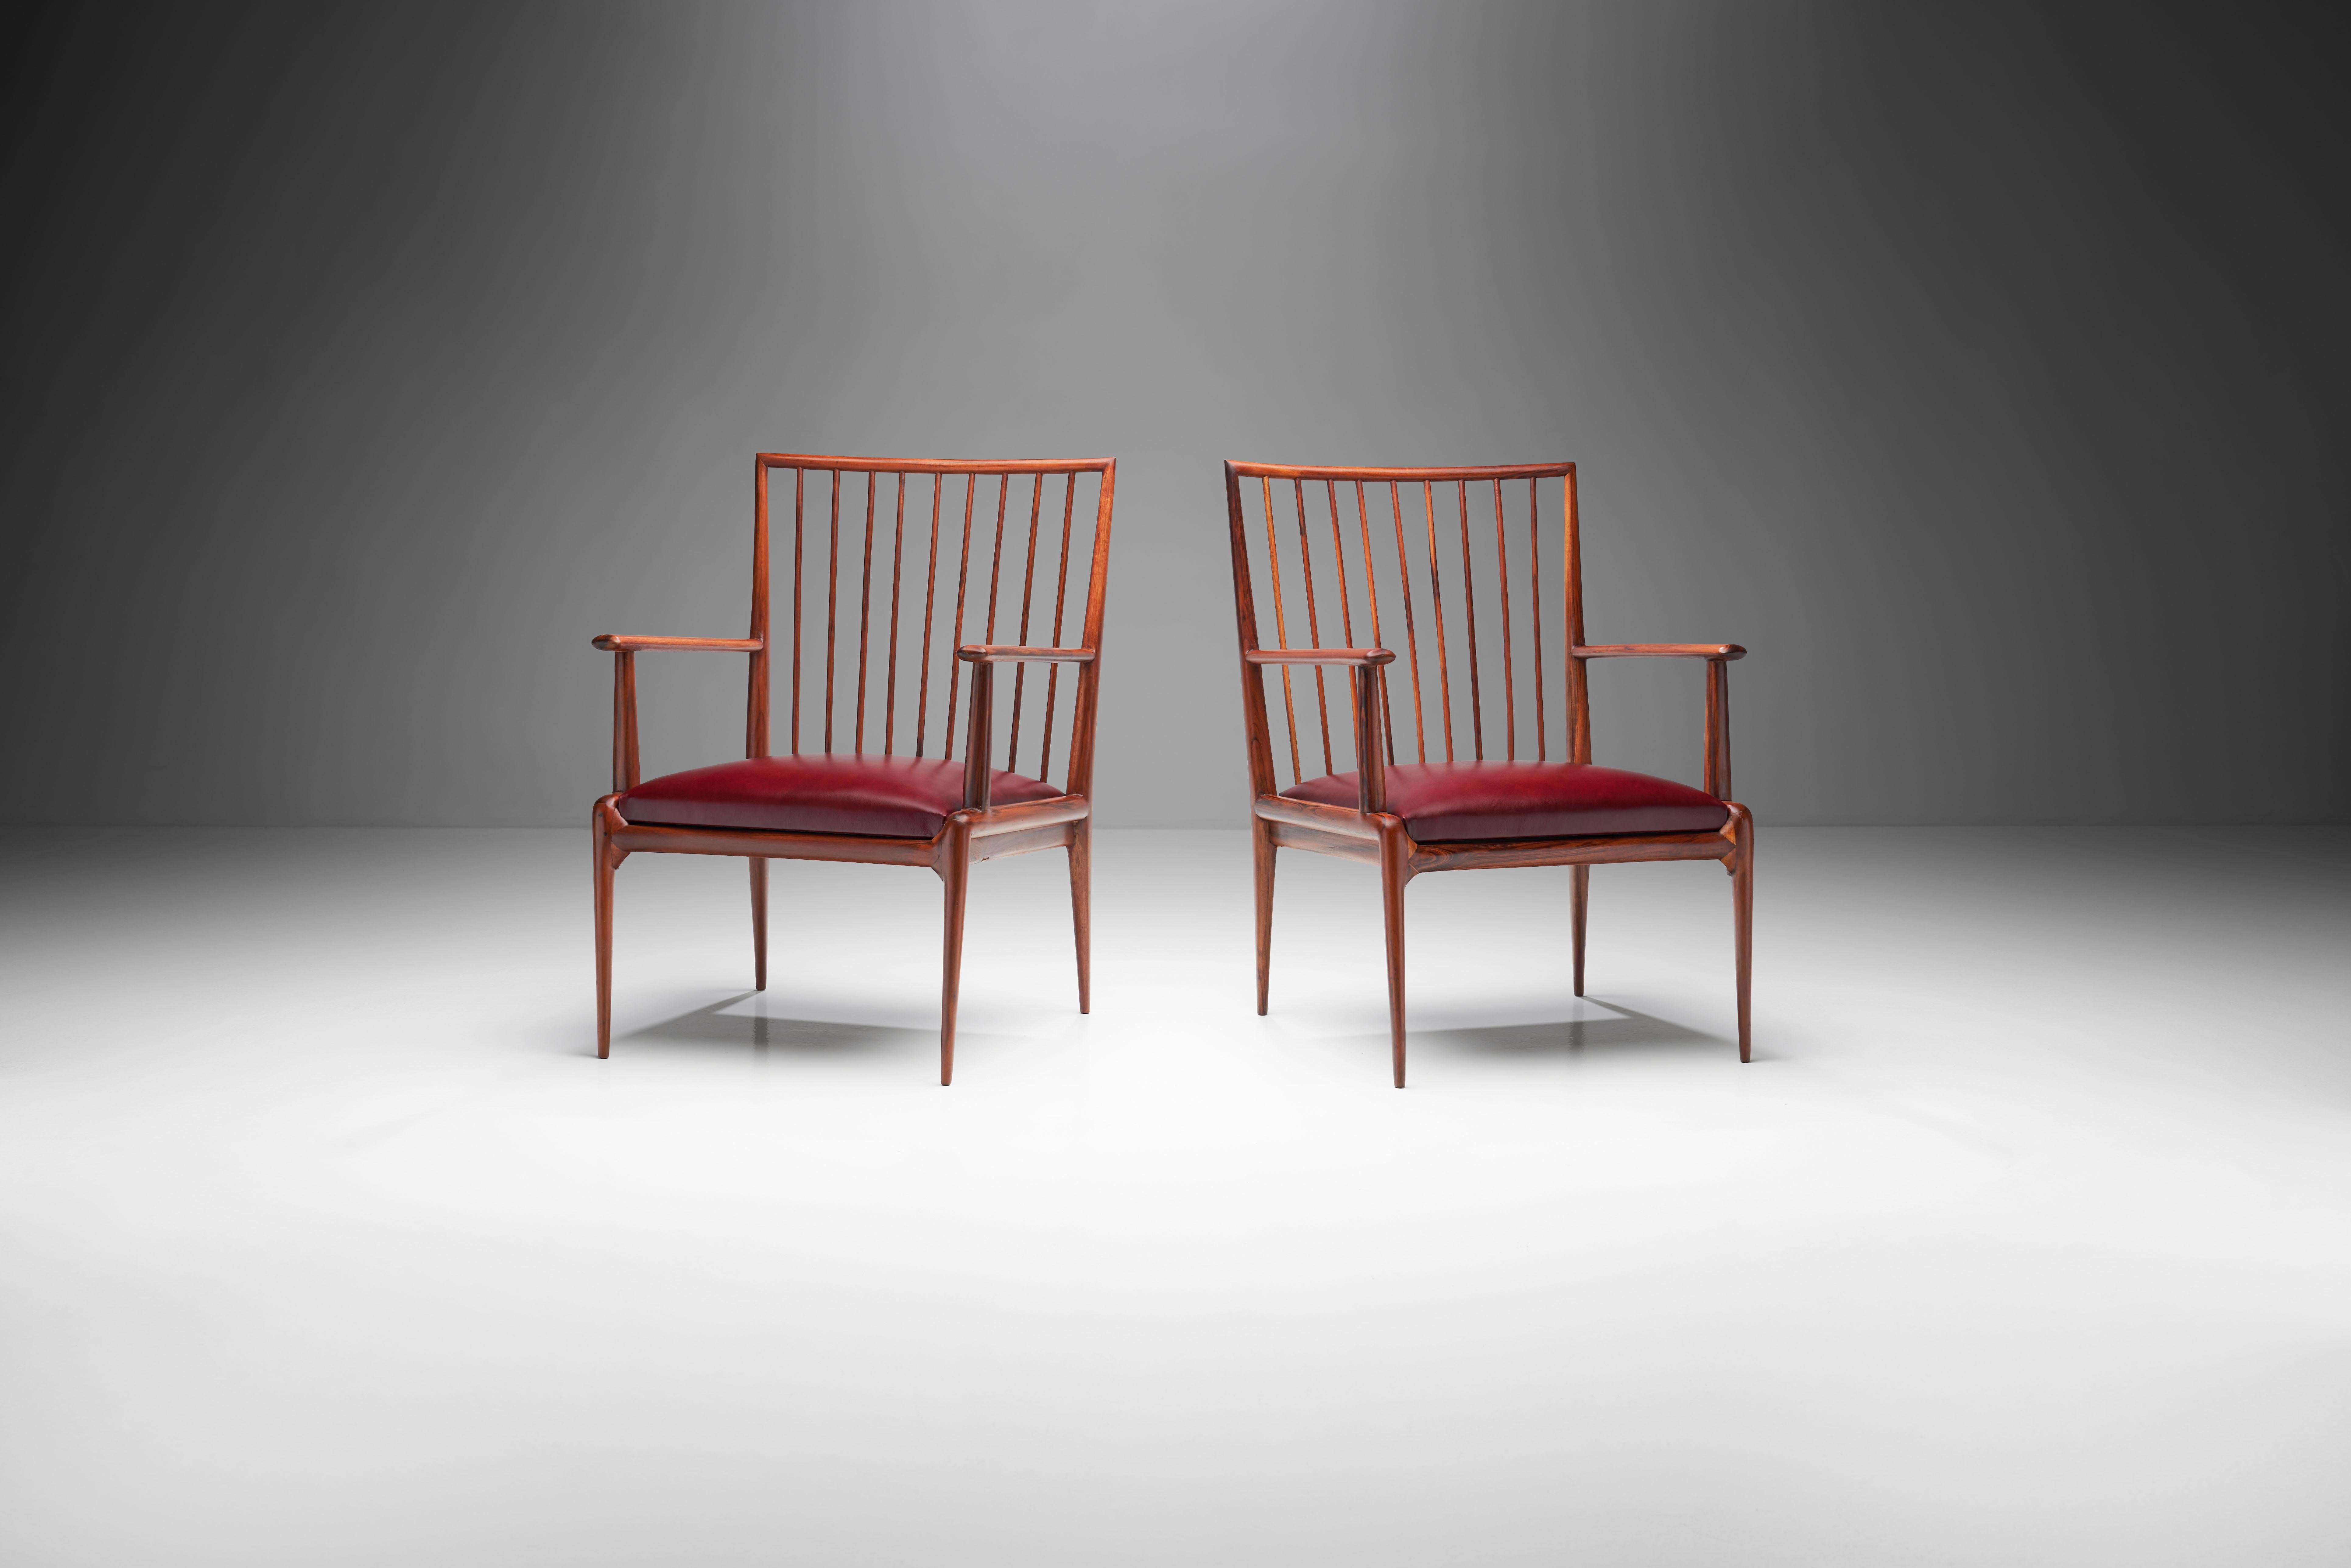 Dieses seltene Paar brasilianischer Sessel aus der Mitte des Jahrhunderts wird dem Designkollektiv Branco und Preto zugeschrieben. Sie sind rationell und geometrisch gestaltet und zeichnen sich durch Leichtigkeit und Einfachheit aus.

Diese Stühle